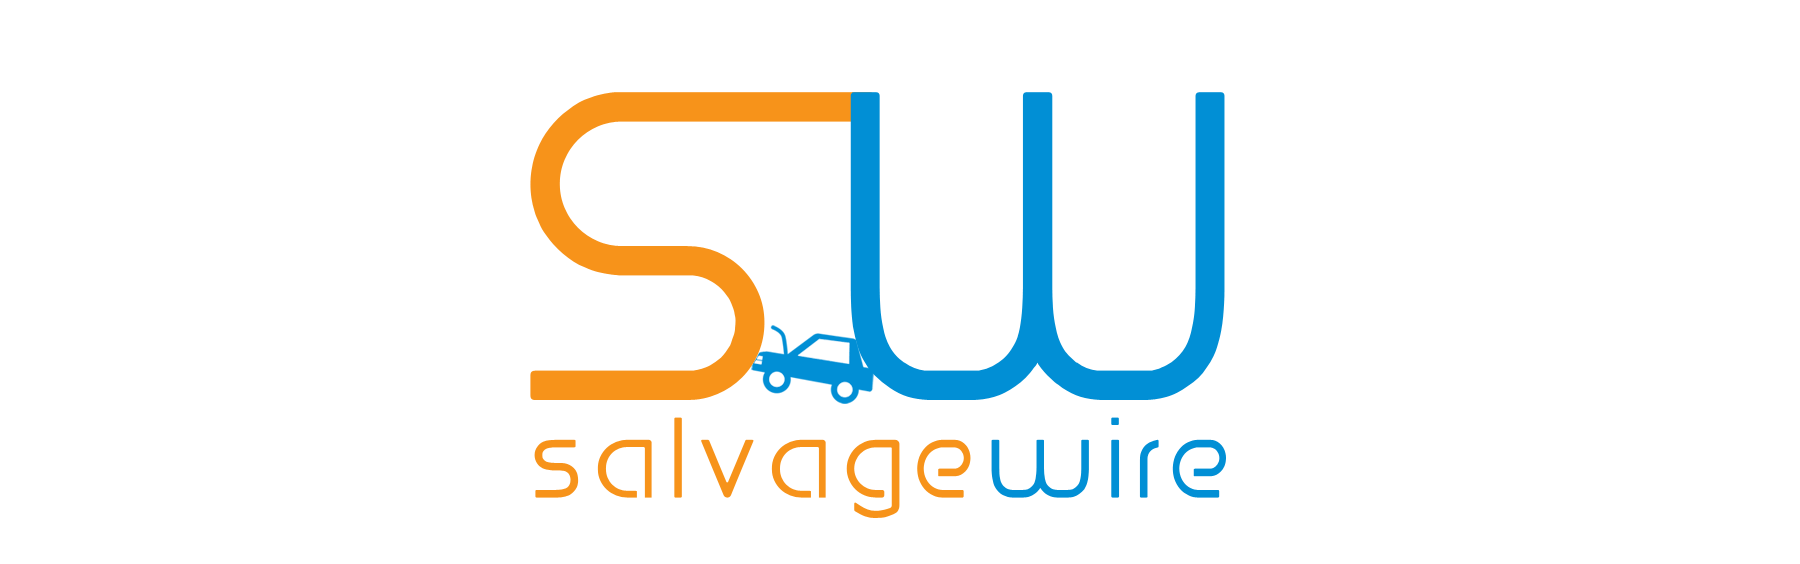 Salvage Logo - Salvage Wire